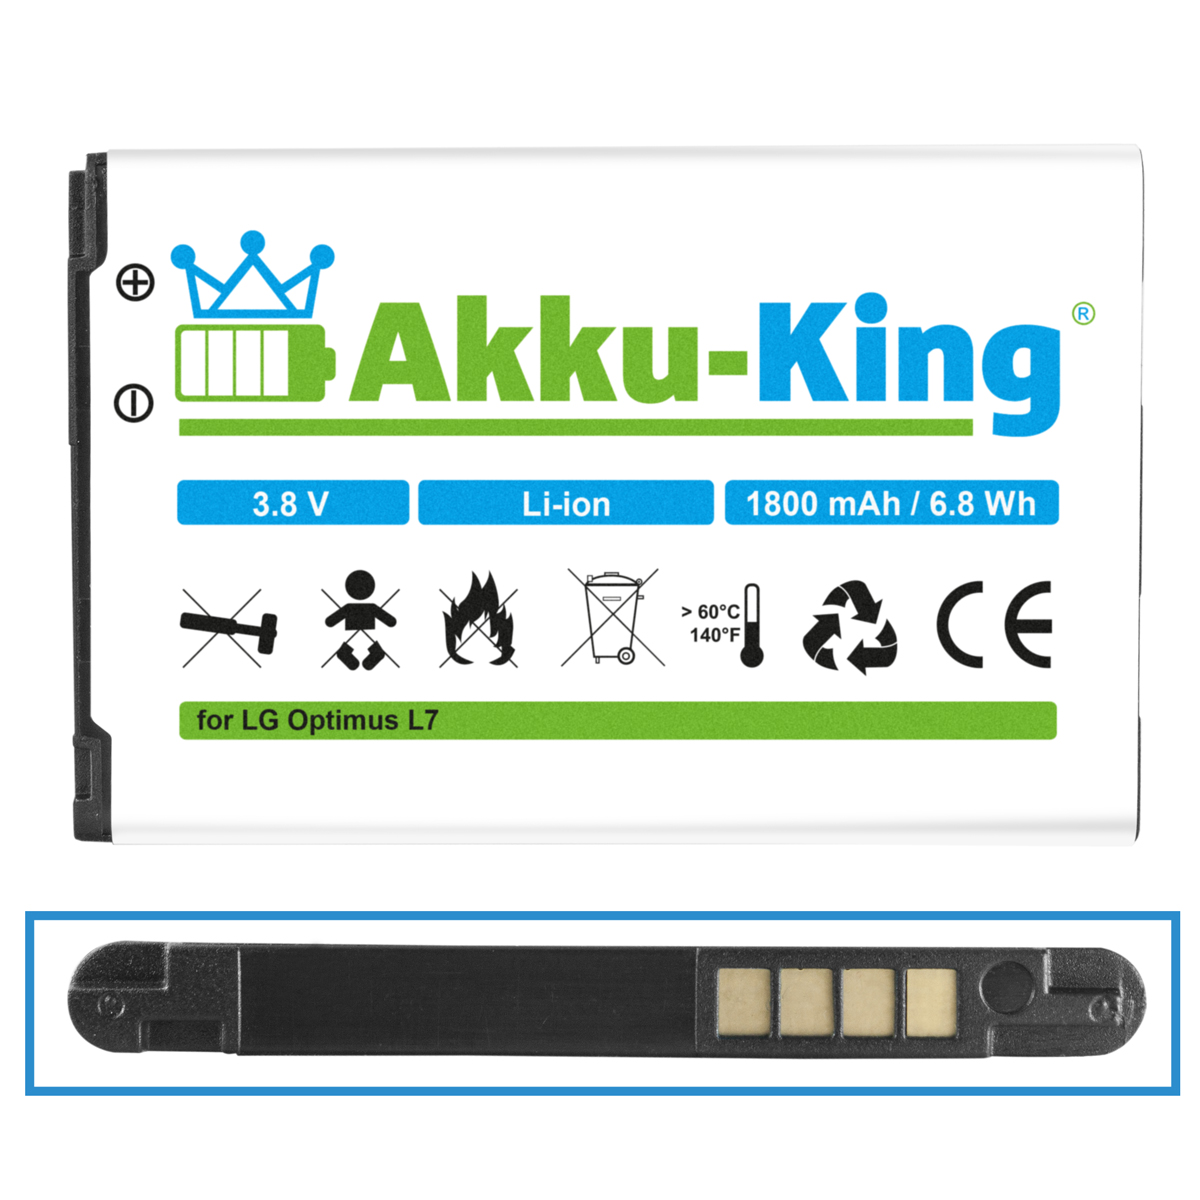 AKKU-KING Akku Li-Ion LG 1800mAh Handy-Akku, BL-44JH 3.8 kompatibel mit Volt